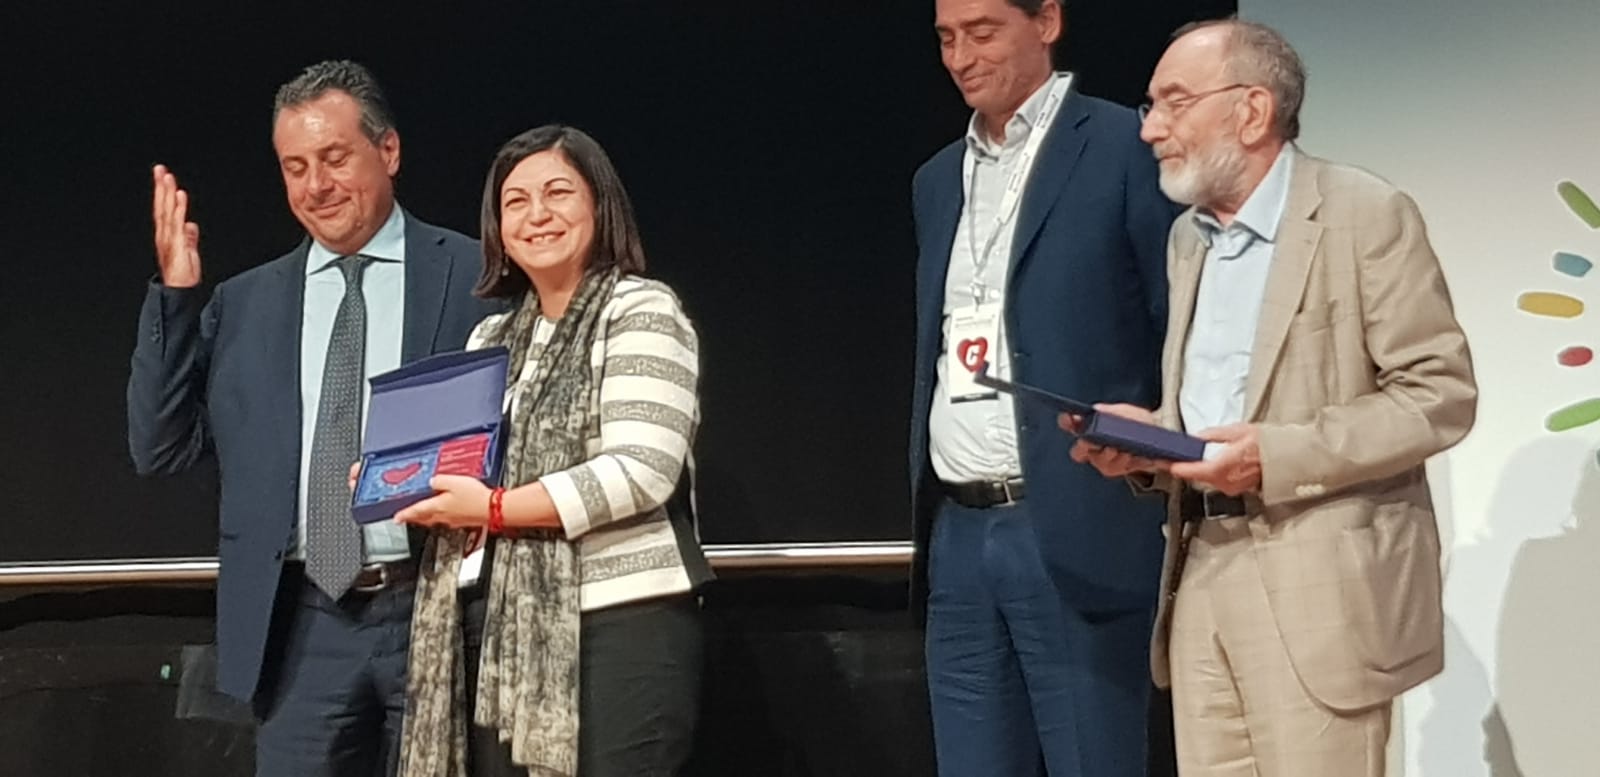 Il pane A Chi Serve 2.0 riceve il premio Buone Notizie 2018 del Corriere della Sera